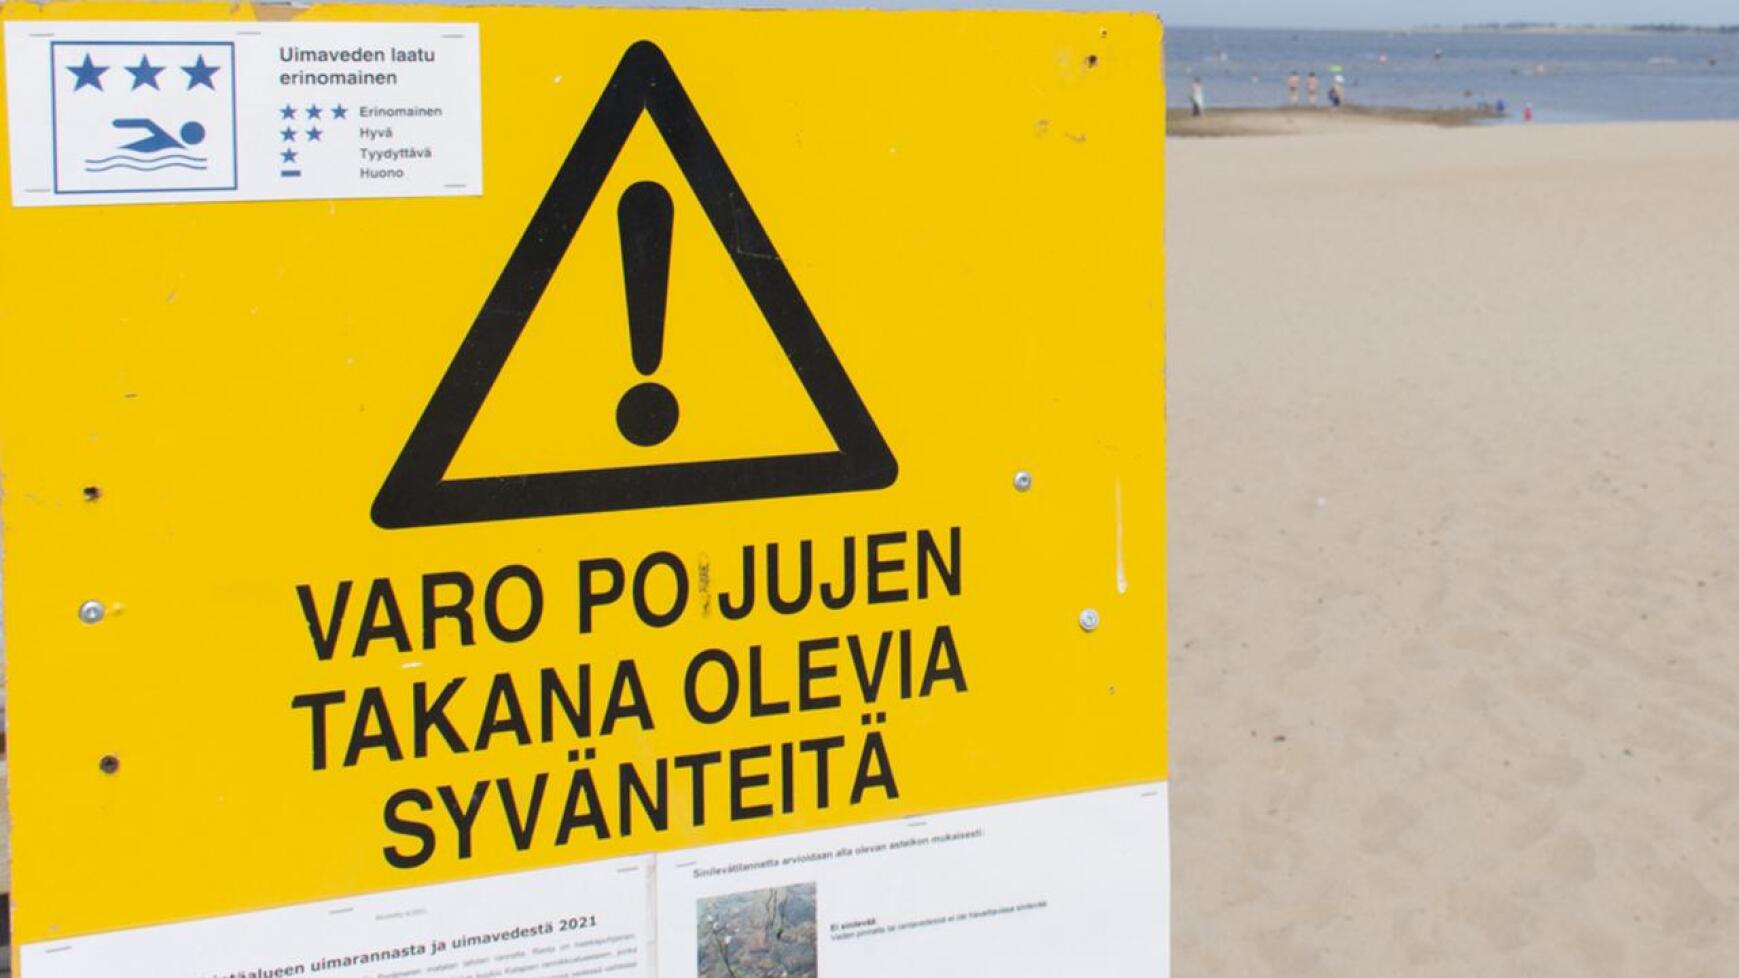 Leirintäalueen rannalla syvänteistä varoittavat kyltit kannattaa ottaa tosissaan.